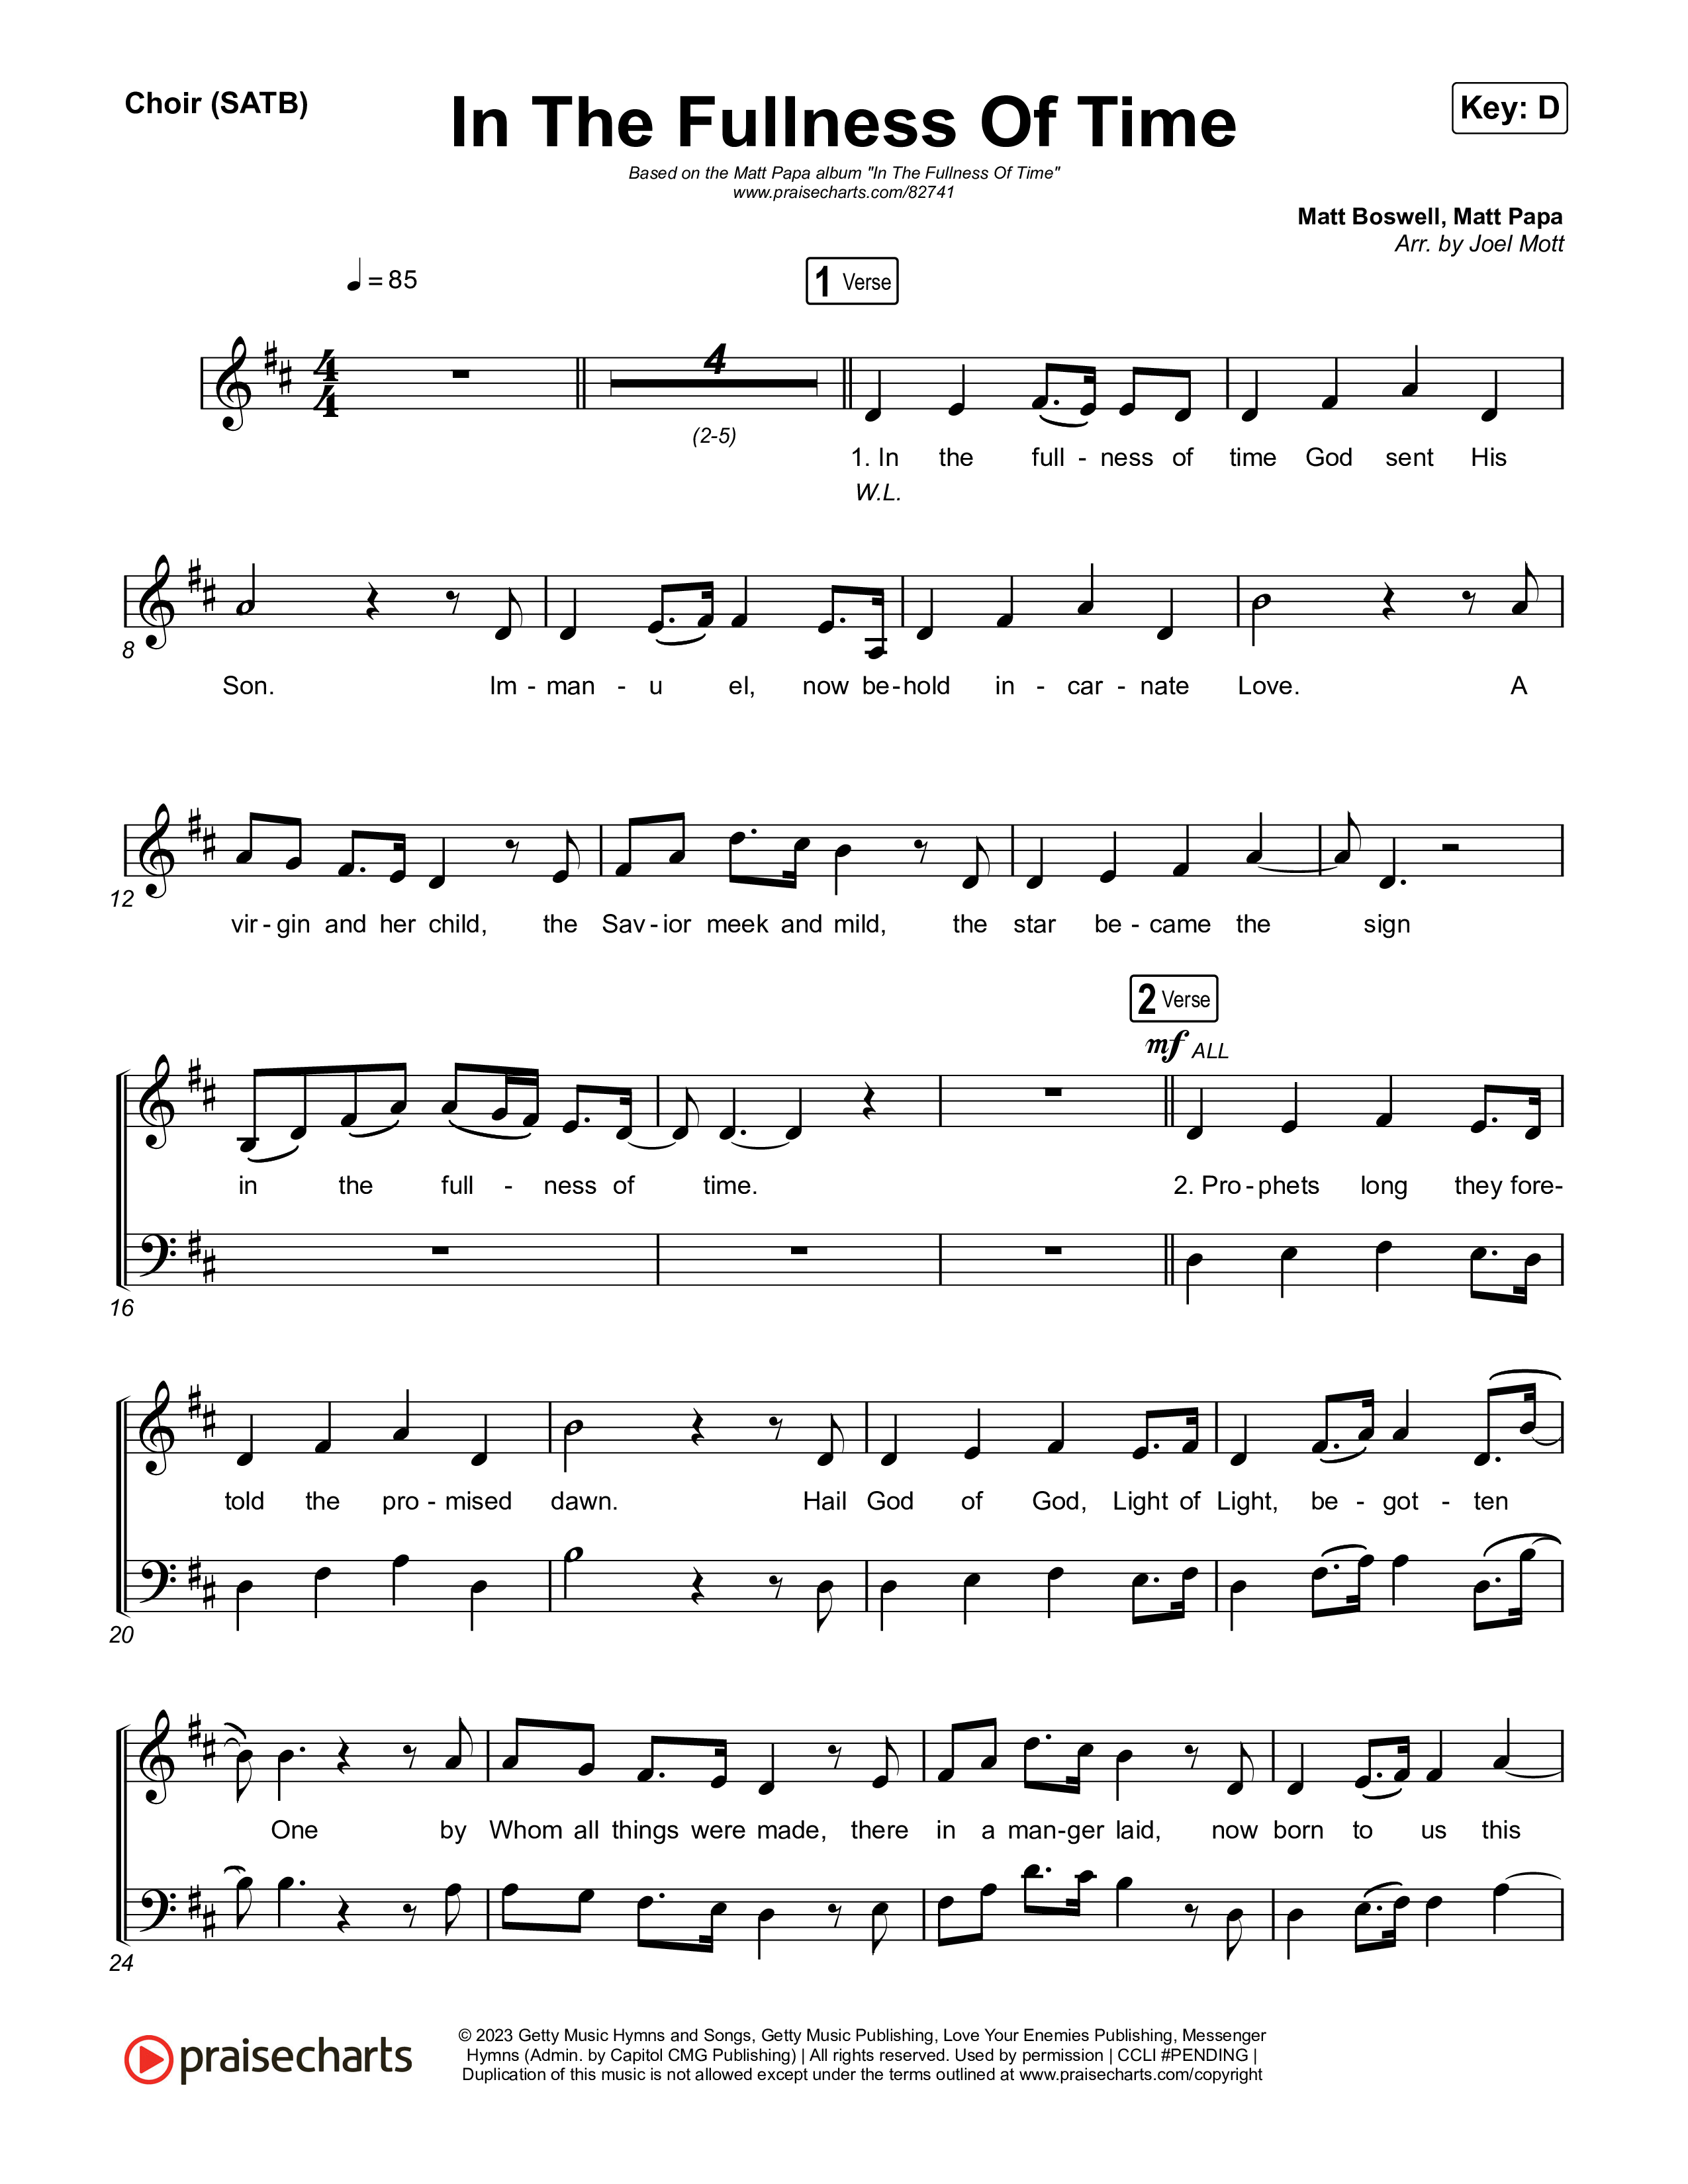 In The Fullness Of Time Choir Sheet (SATB) (Matt Papa / Matt Boswell)